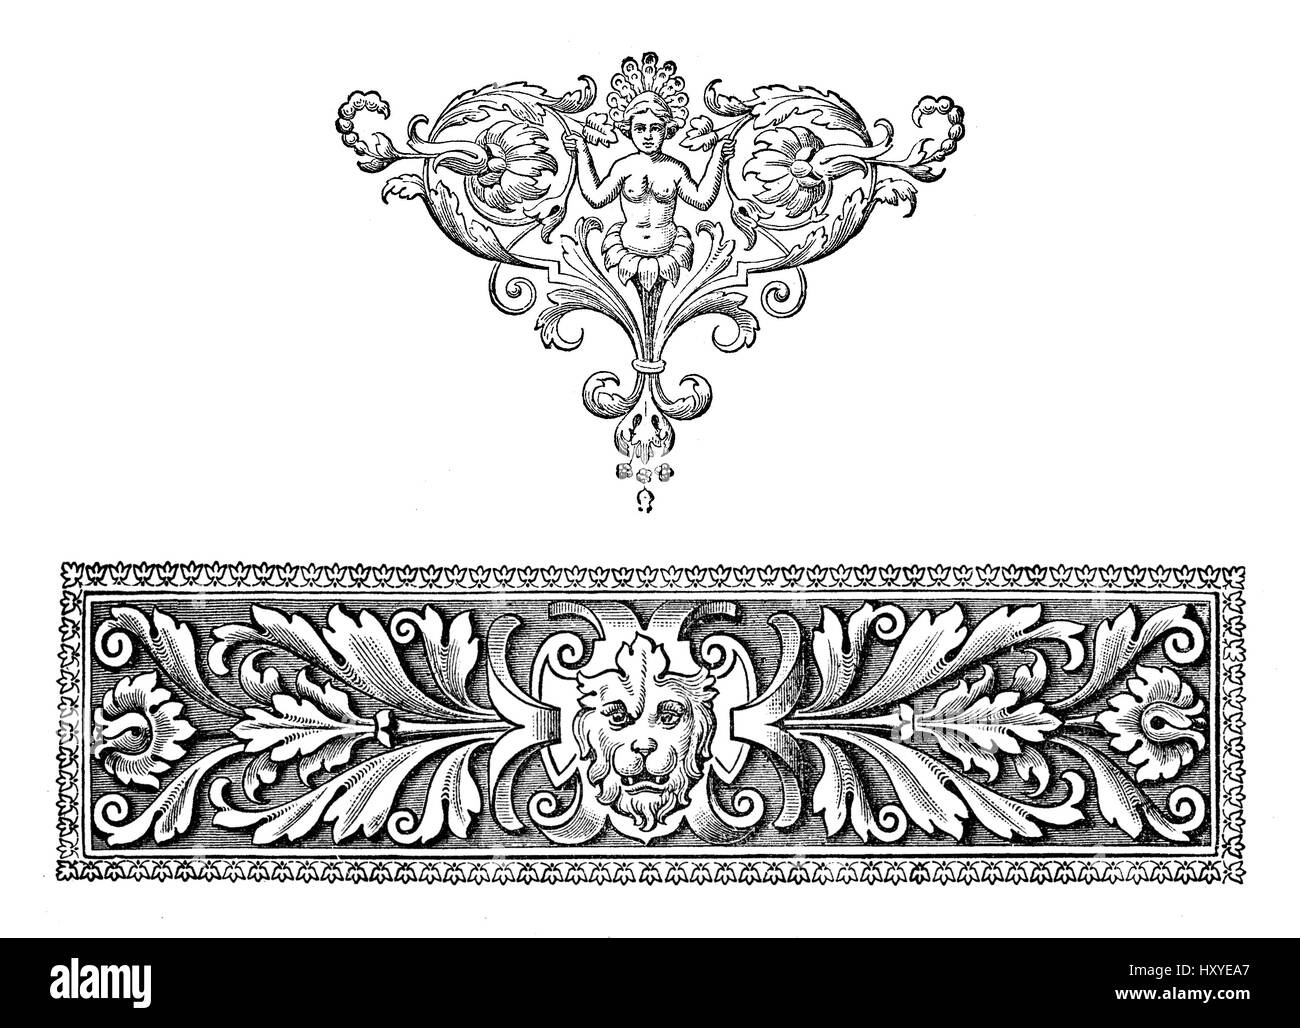 Riccamente decorato in stile barocco frontiera tipografica, figura mitologica e motivi floreali Foto Stock